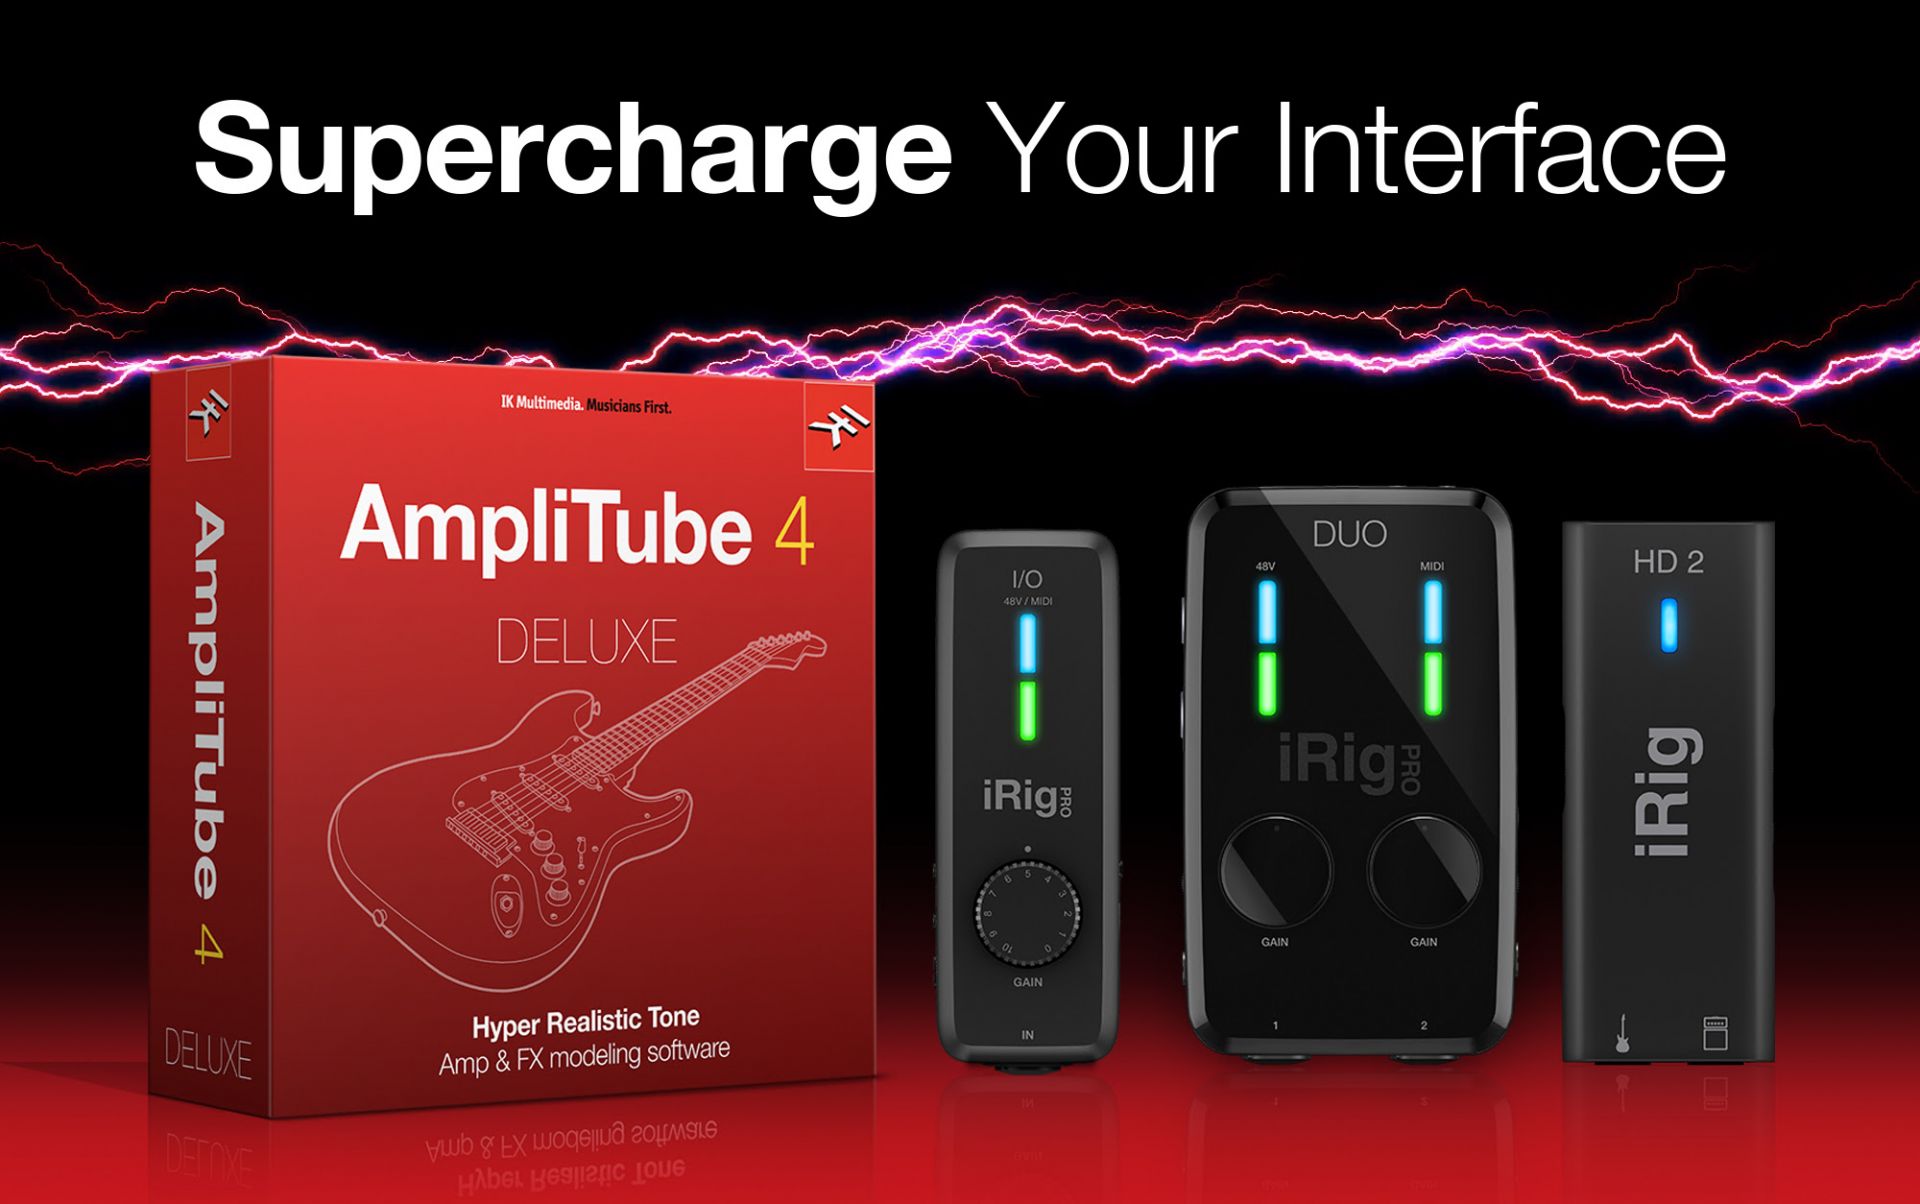 *対象のiRigインターフェースを購入/登録で、AmpliTube 4 Deluxeをプレゼント！ 2018年9月4日から9月30日までの間にiRig HD 2、iRig Pro I/O、iRig Pro Duo、iRig UAを購入/登録していただいた方全員に、通常価格35,630円のAmpliT […]